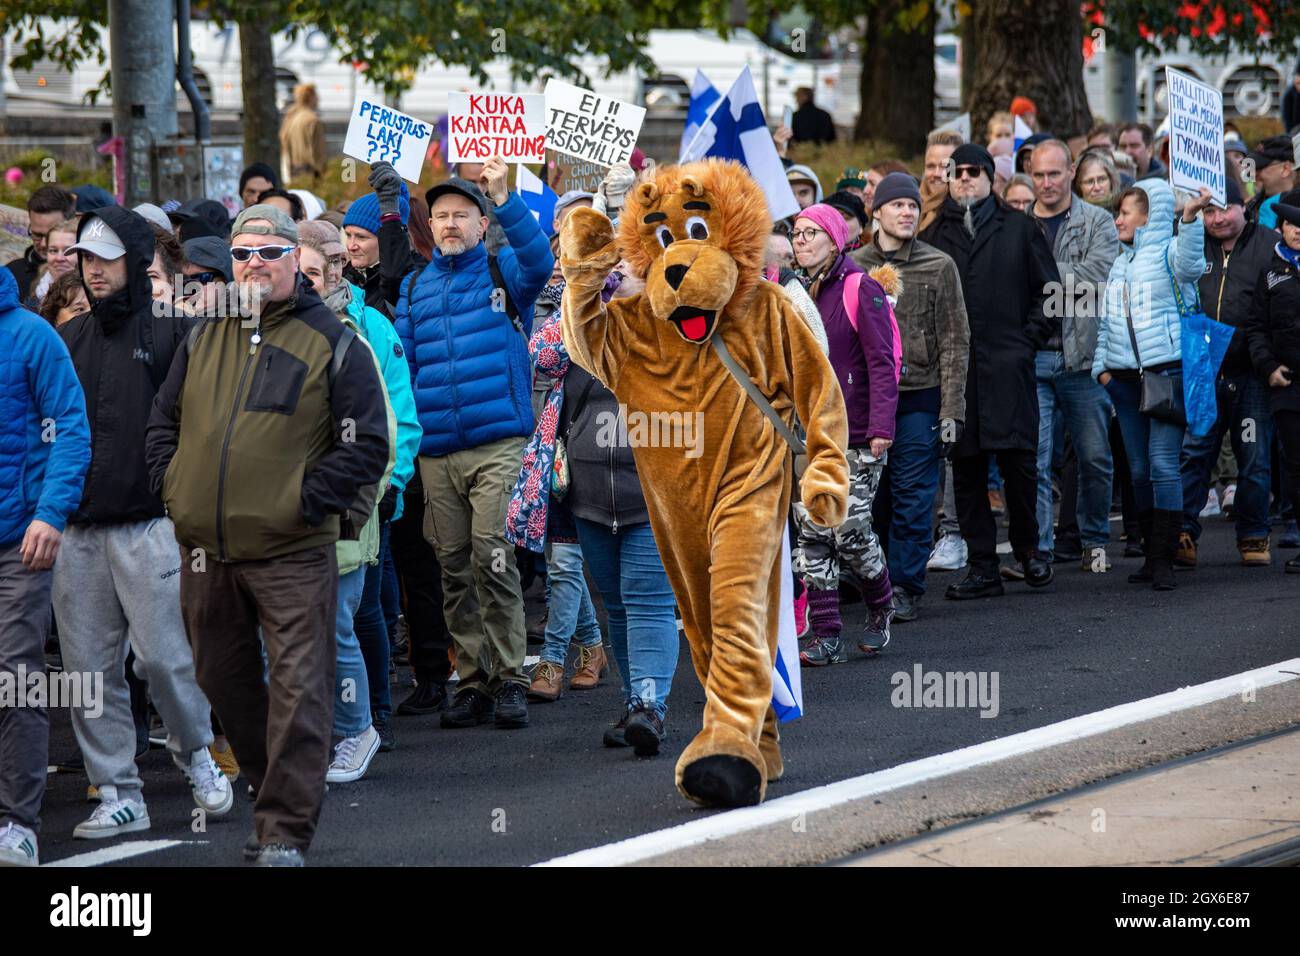 Maskottchen Löwe marschiert mit Demonstranten gegen die Impfung gegen das Coronavirus in Helsinki, Finnland Stockfoto